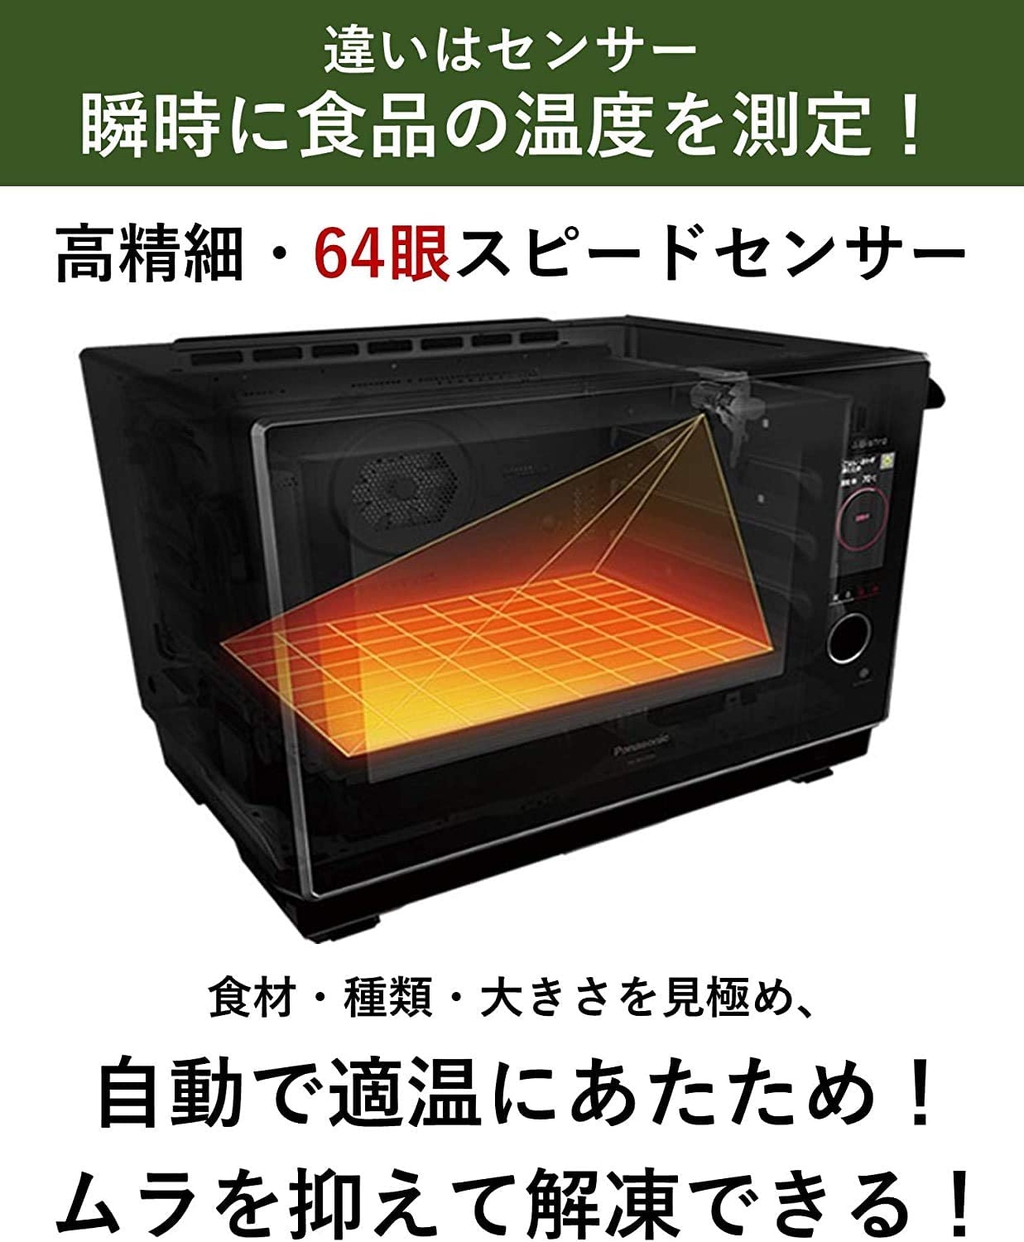 Panasonic(パナソニック) ビストロ スチームオーブンレンジ NE-BS2700の商品画像4 